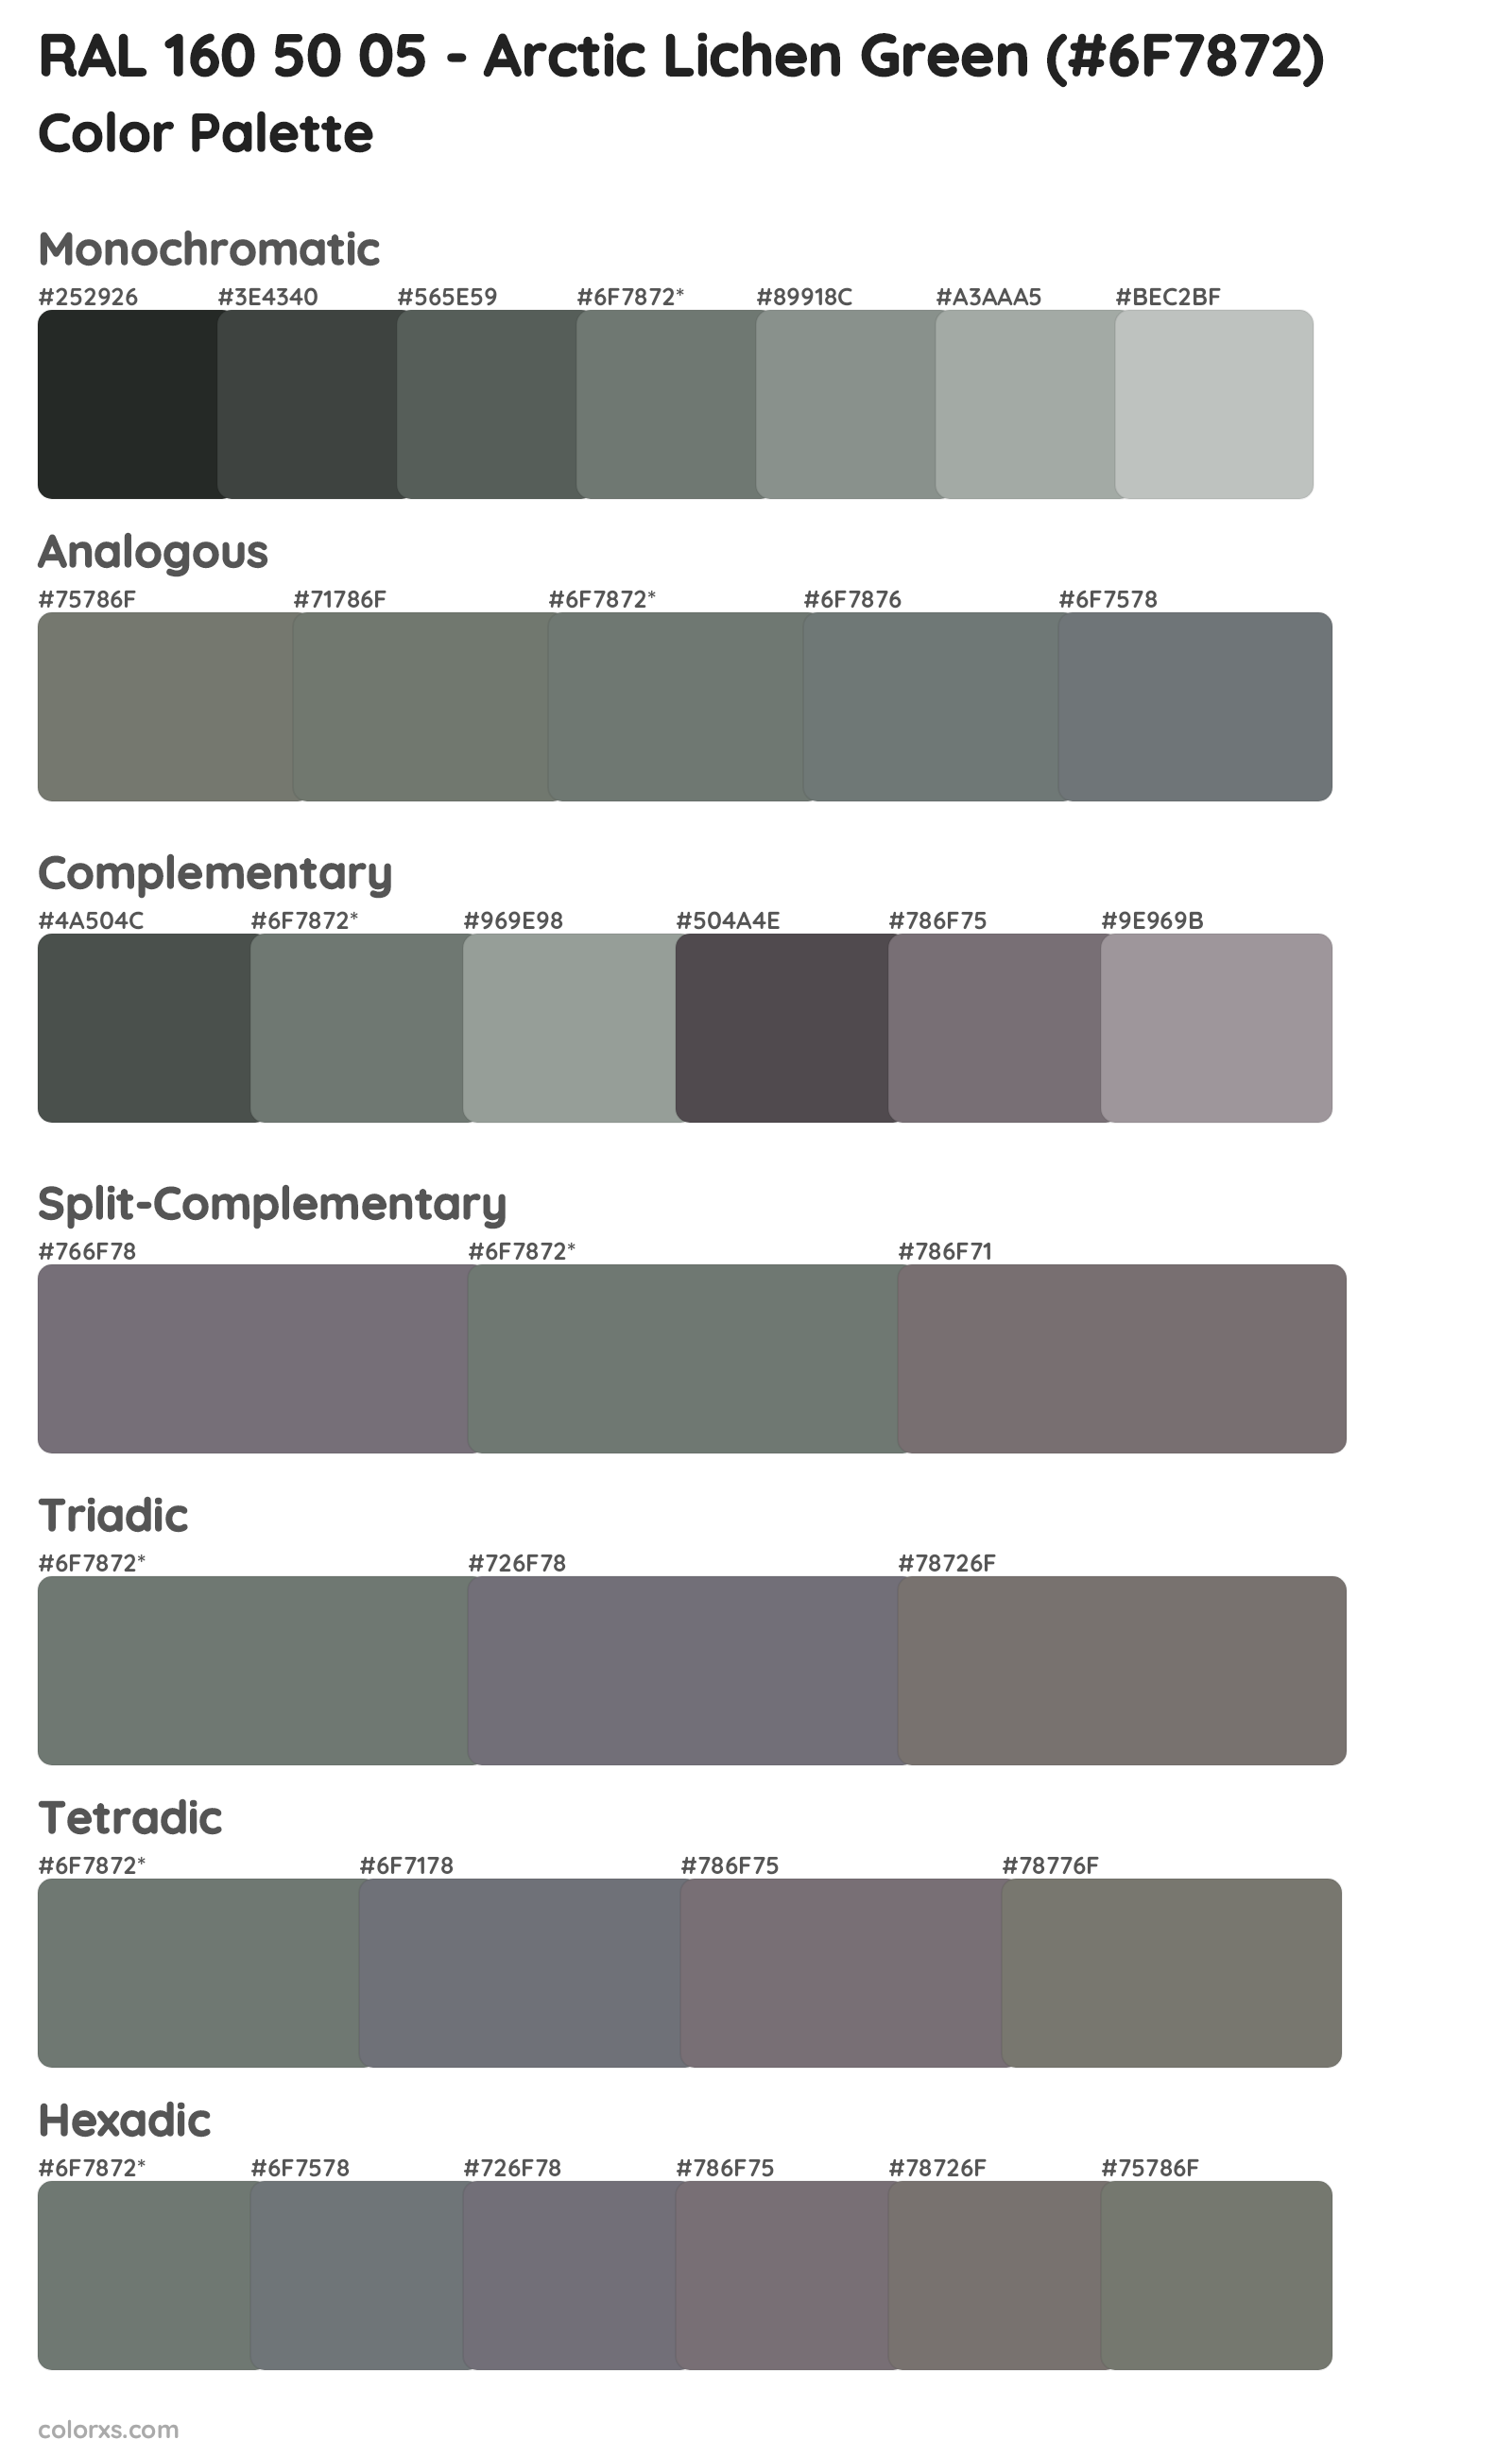 RAL 160 50 05 - Arctic Lichen Green Color Scheme Palettes